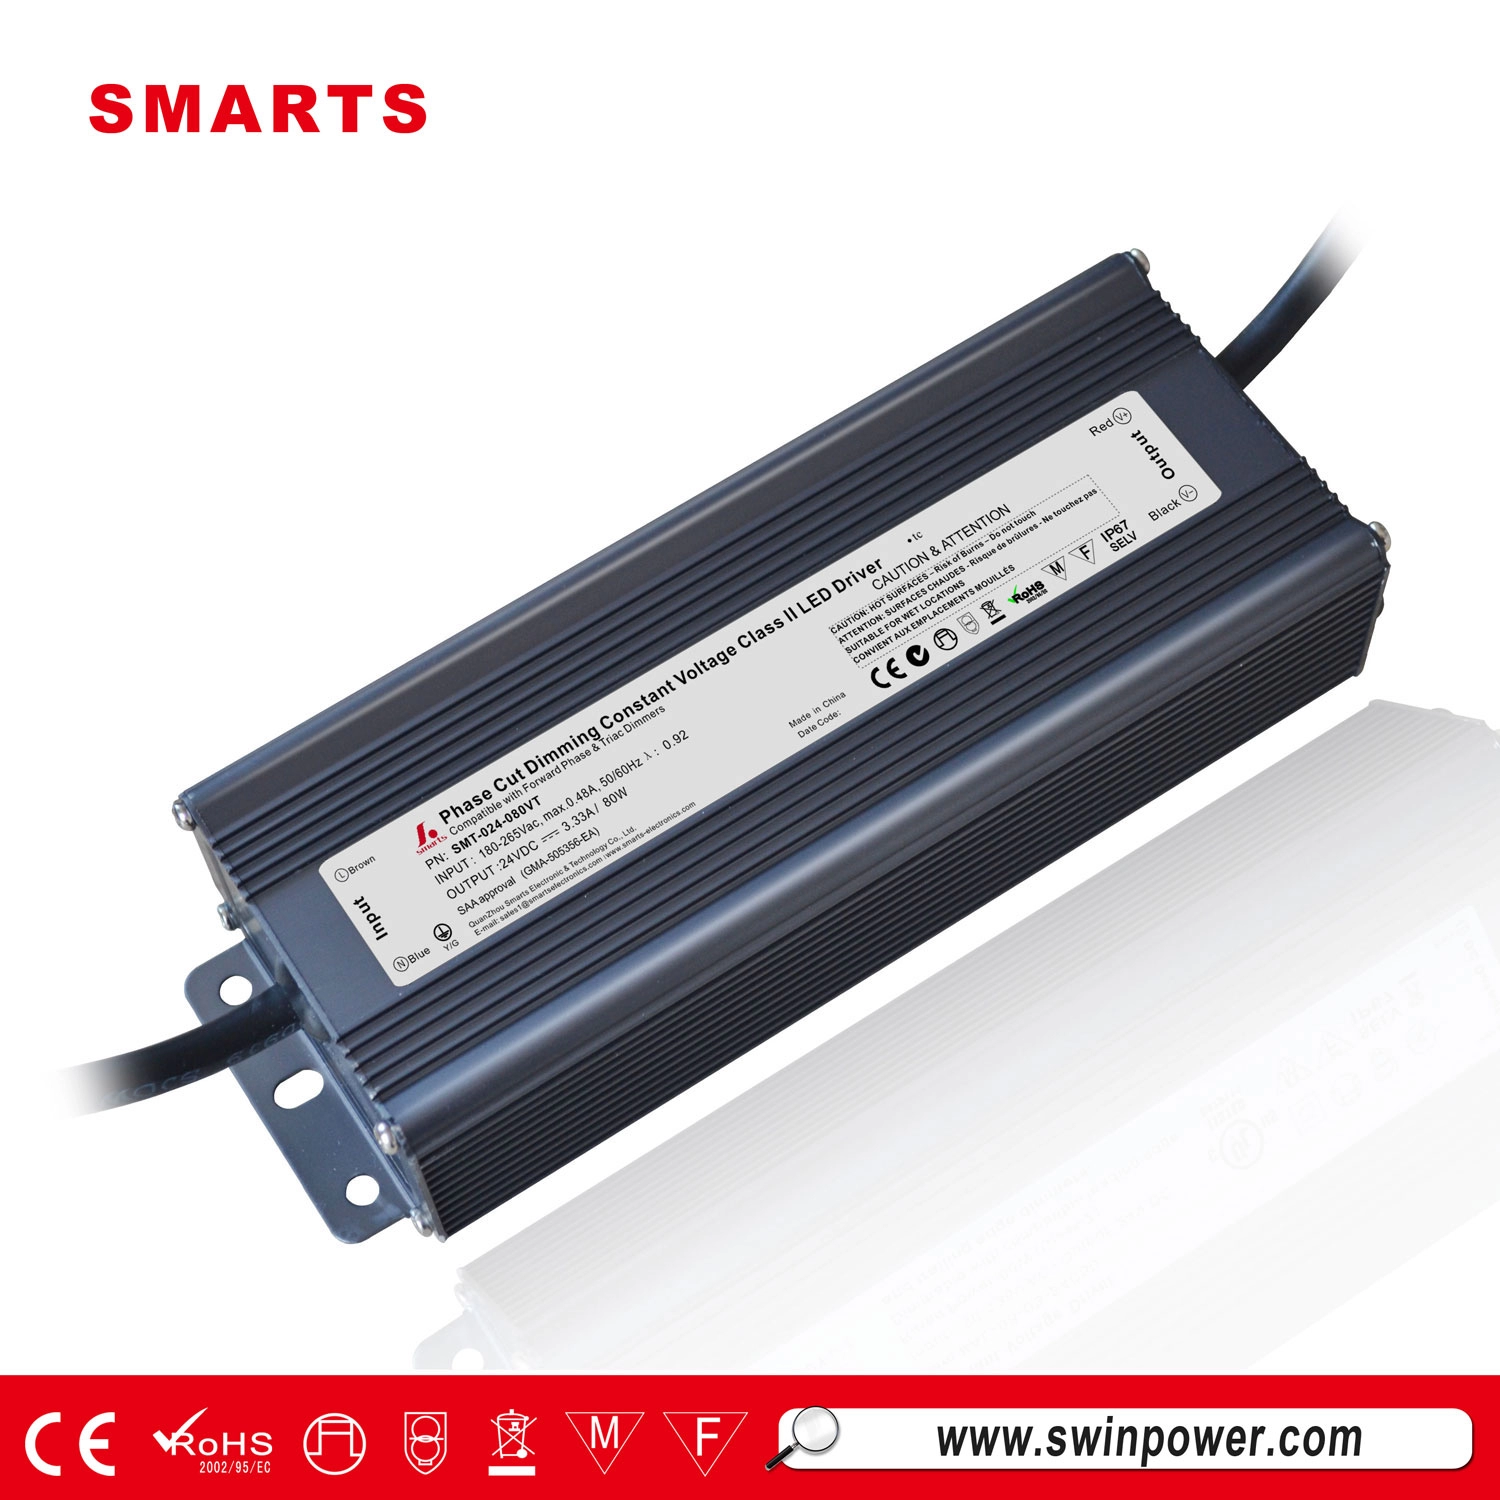 LED-Treiber mit konstanter Spannung, 24 V, 80 W, mit Anschlussdose für LED-Netzteil